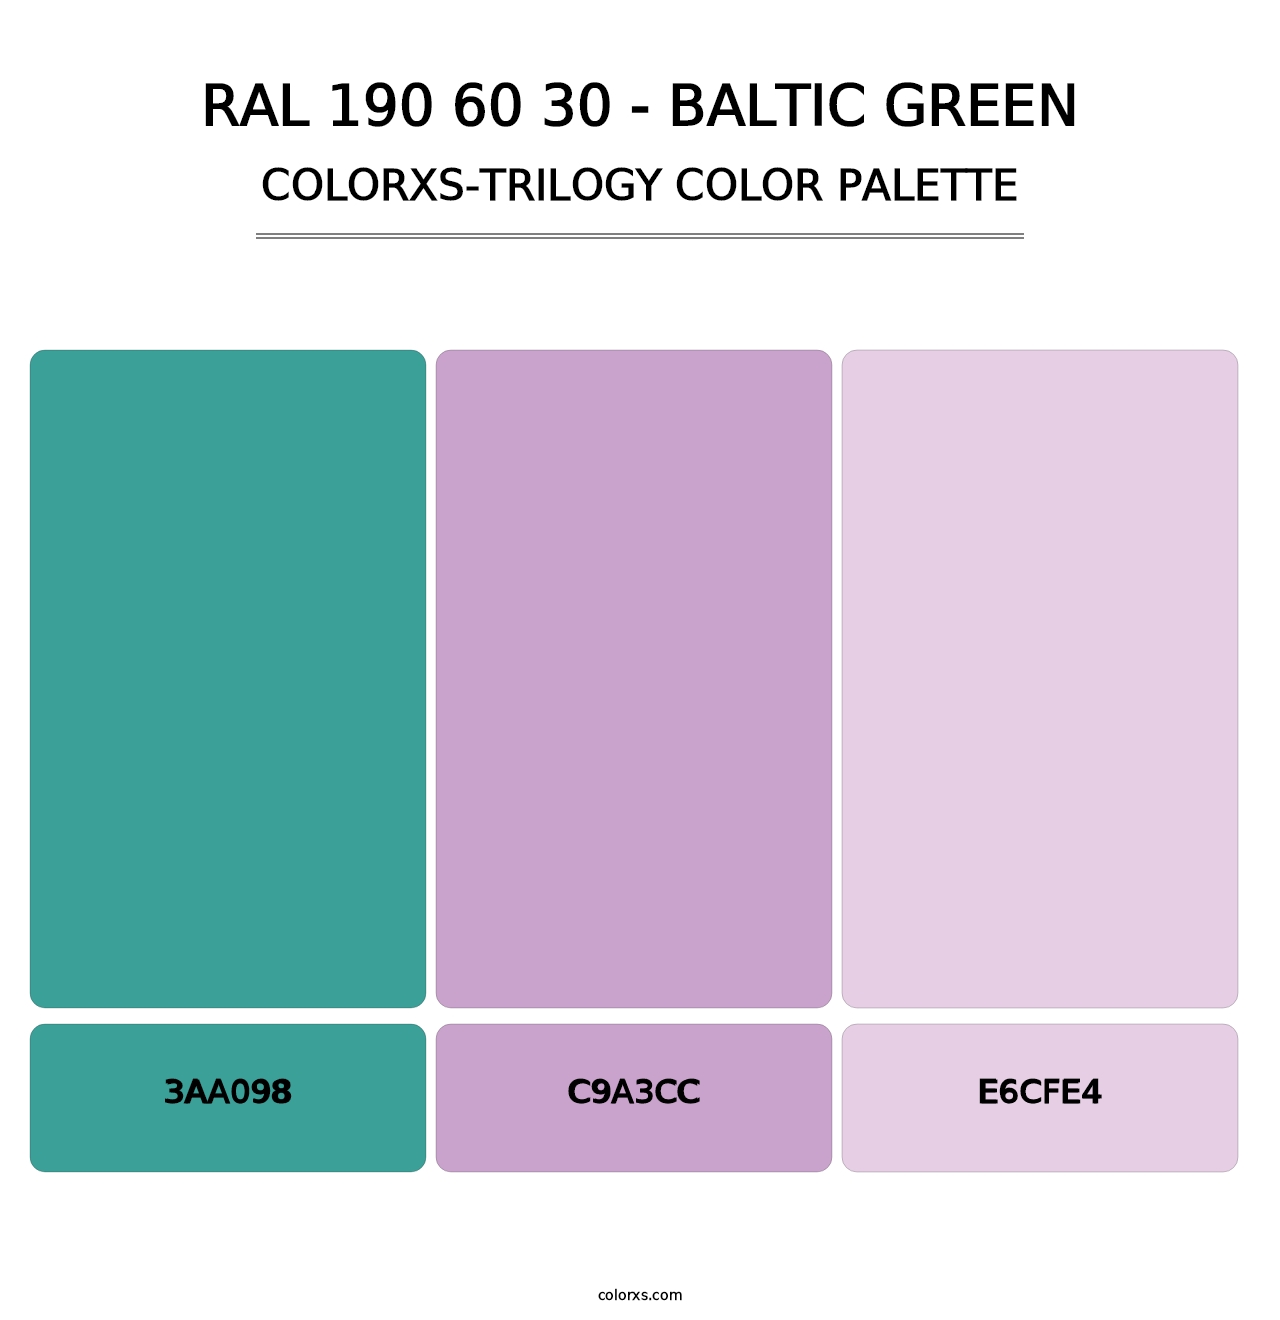 RAL 190 60 30 - Baltic Green - Colorxs Trilogy Palette